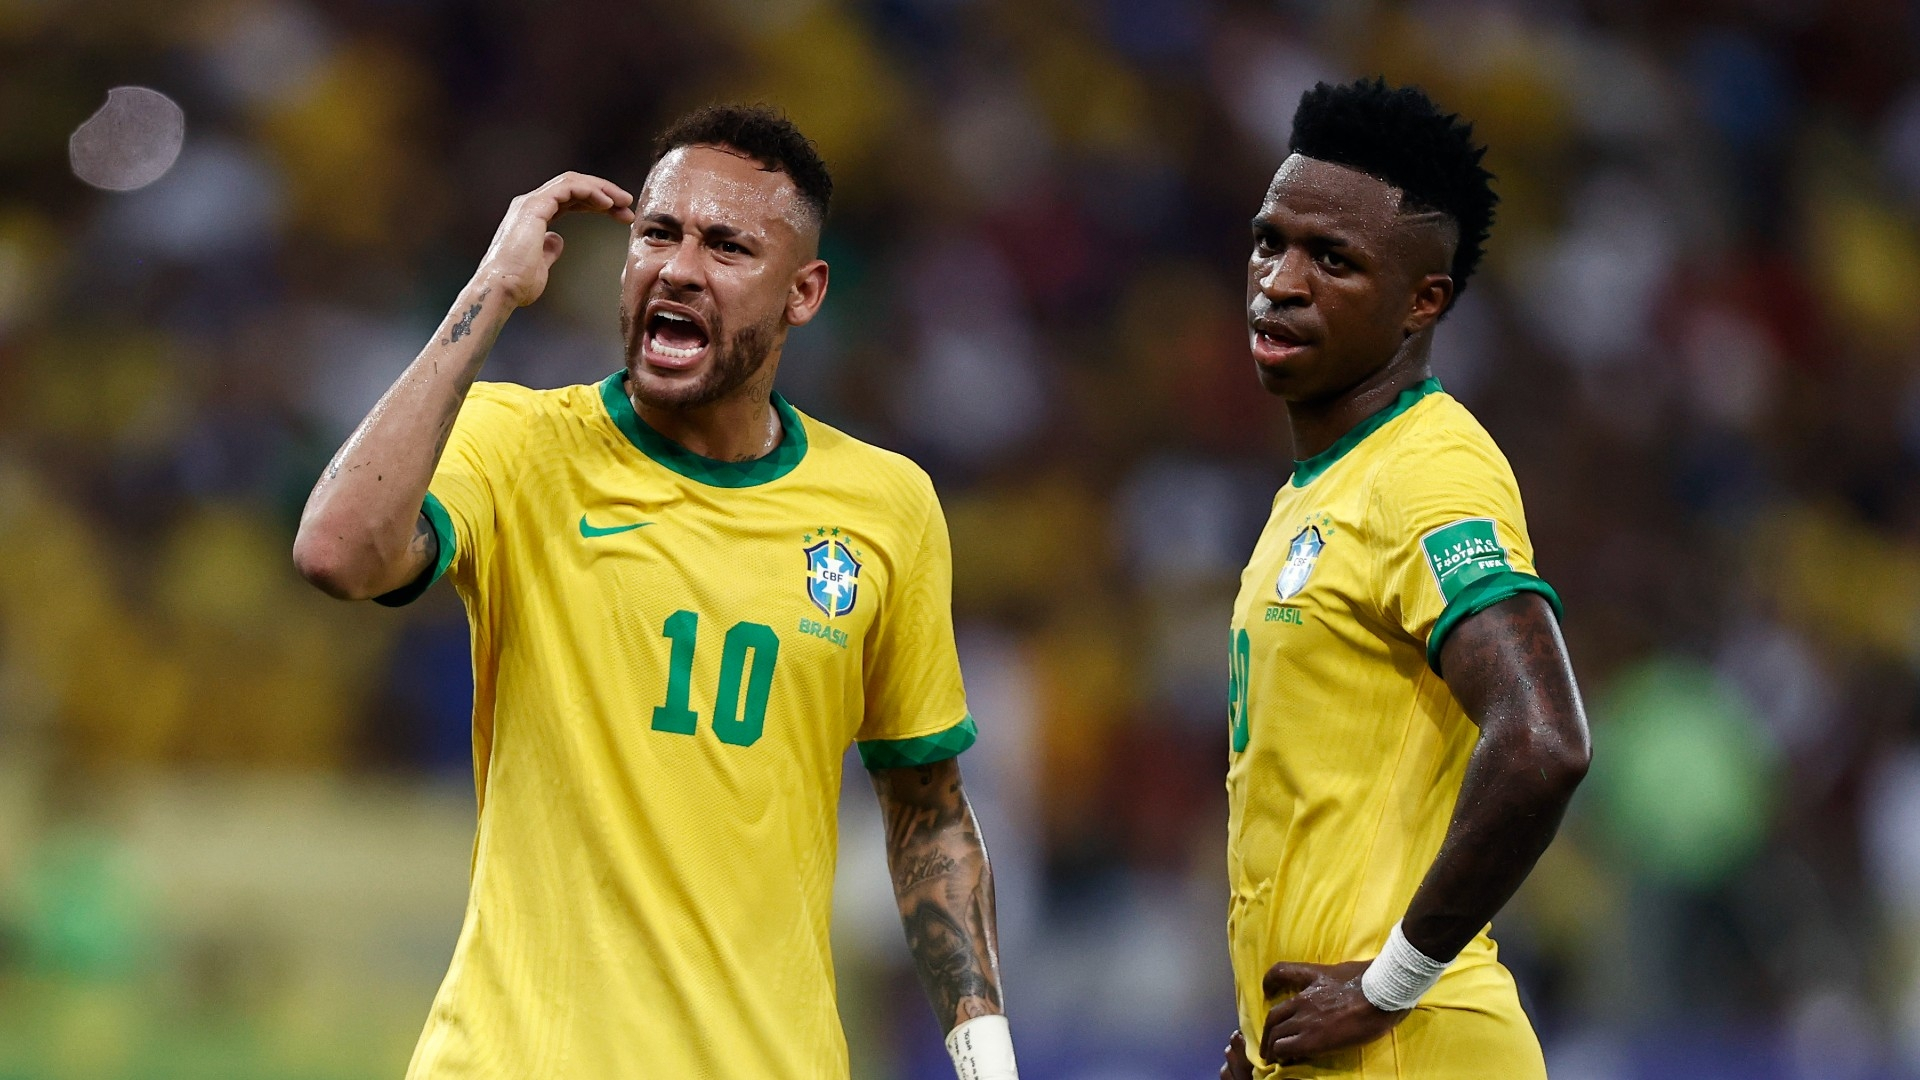 Antony nhảy múa, Neymar "méo mặt" khi nghe tên 1 người dự World Cup